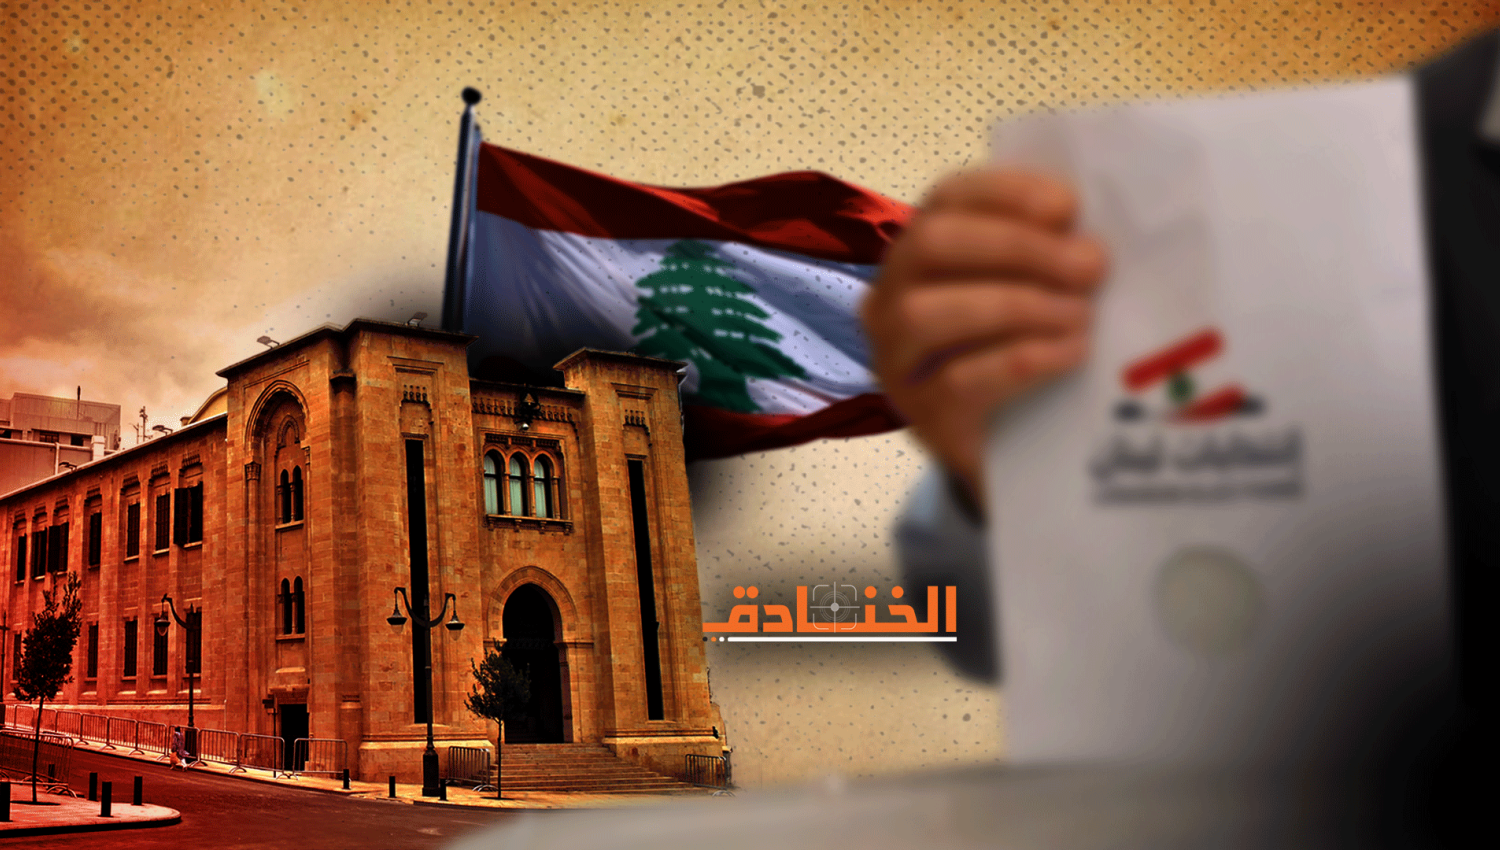 ما بين هيل والبخاري: الانهيار اللبناني قيد الدرس!